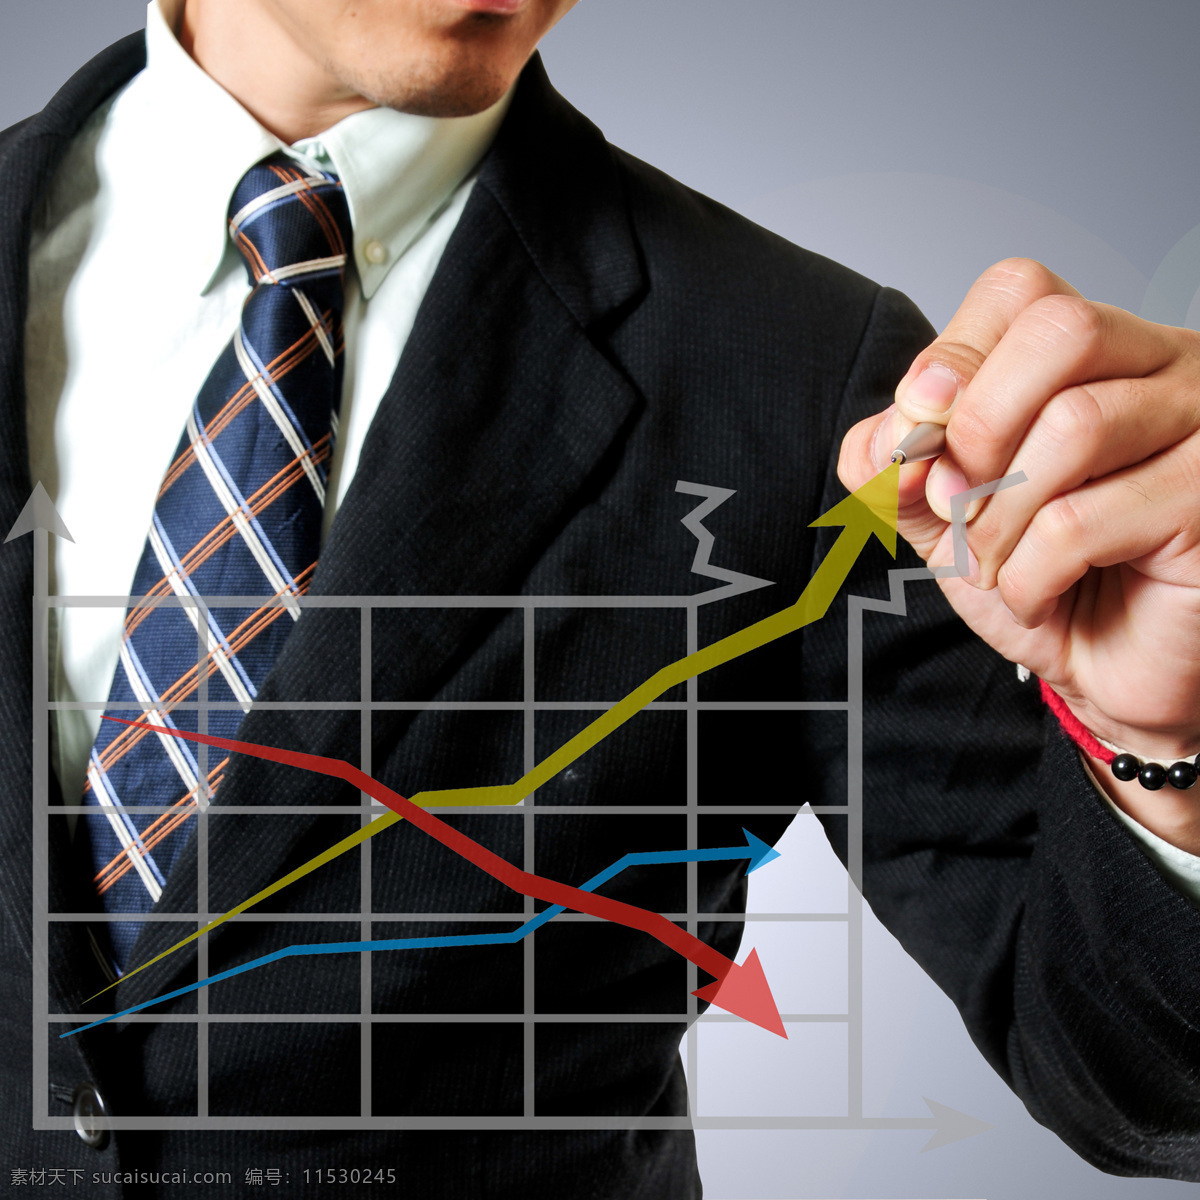 绘制 数据 图 商务 男士 箭头 商务男士 数据图 其他类别 商务金融